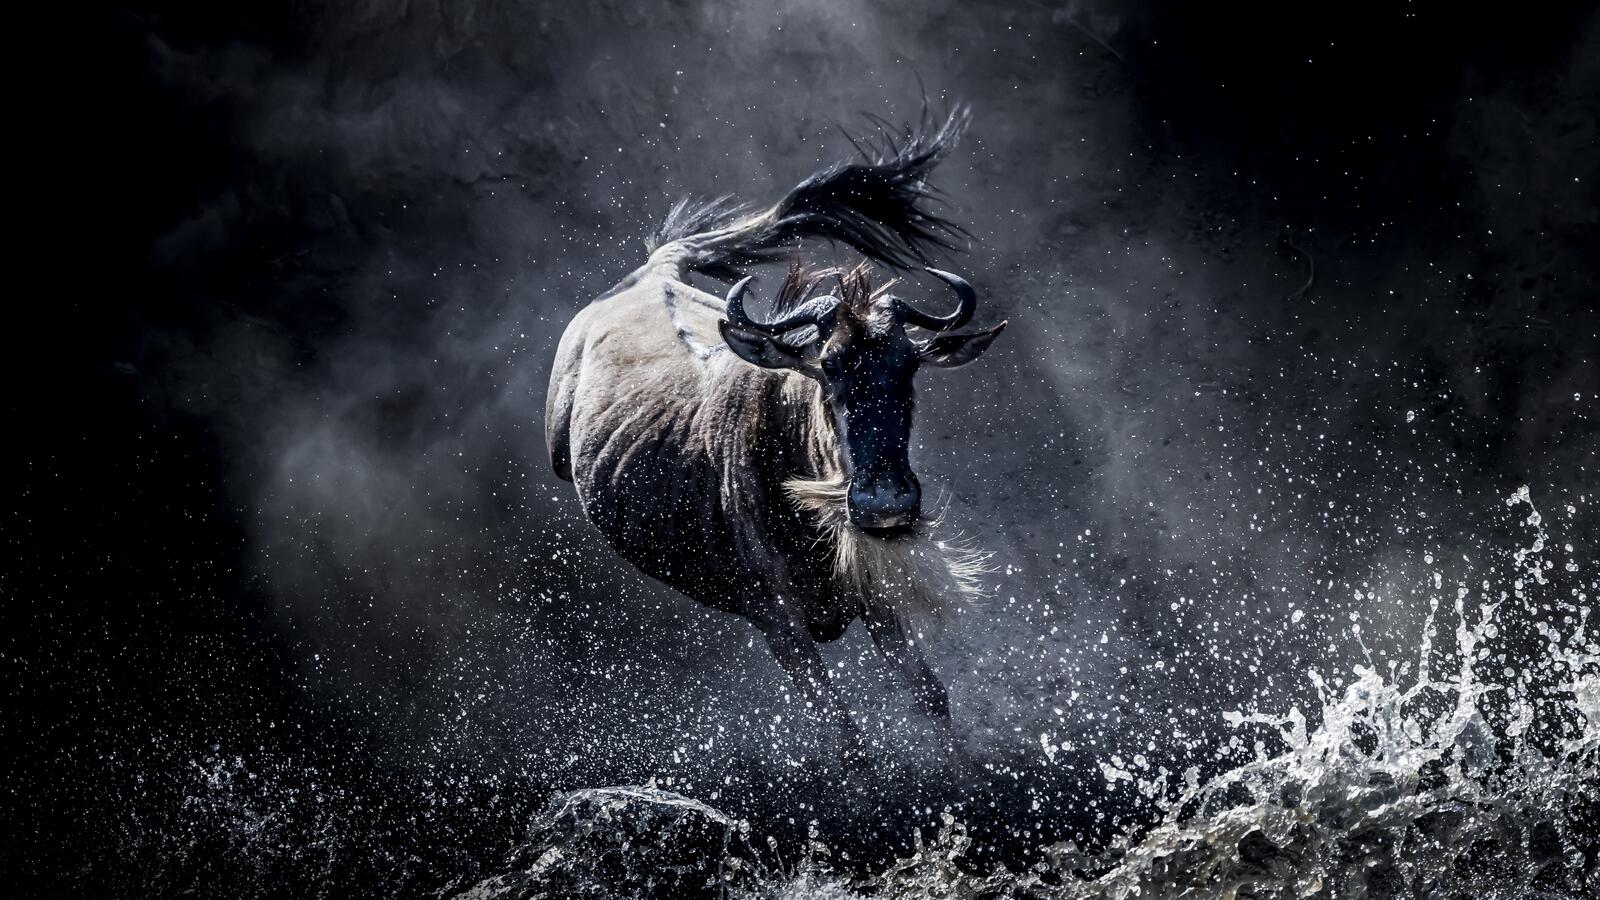 Wallpapers wildebeest running wild on the desktop